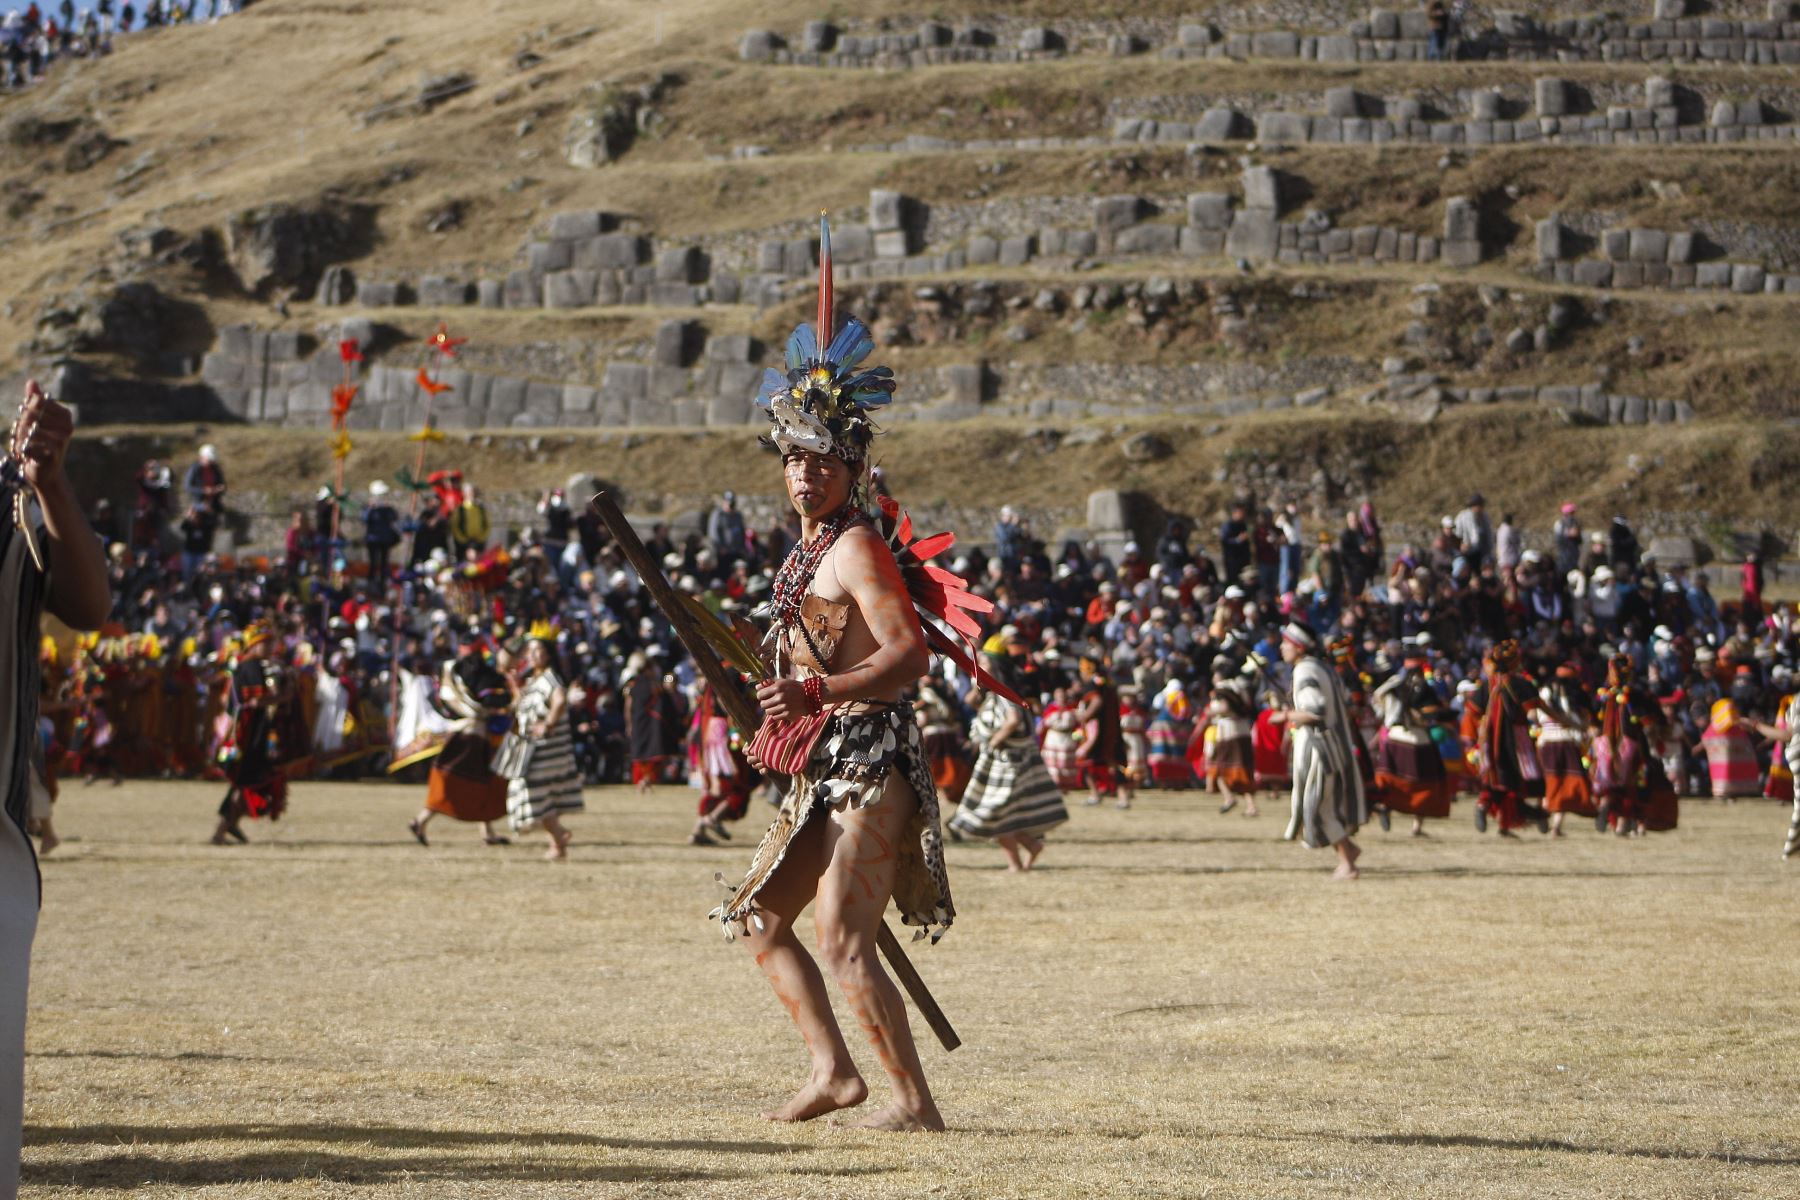 La escenificación del Inti Raymi en la zona monumental de Sacsayhuamán no causó afectación en sitio arqueológico, destacaron autoridades de Cusco. Foto: ANDINA/Percy Hurtado Santillán.